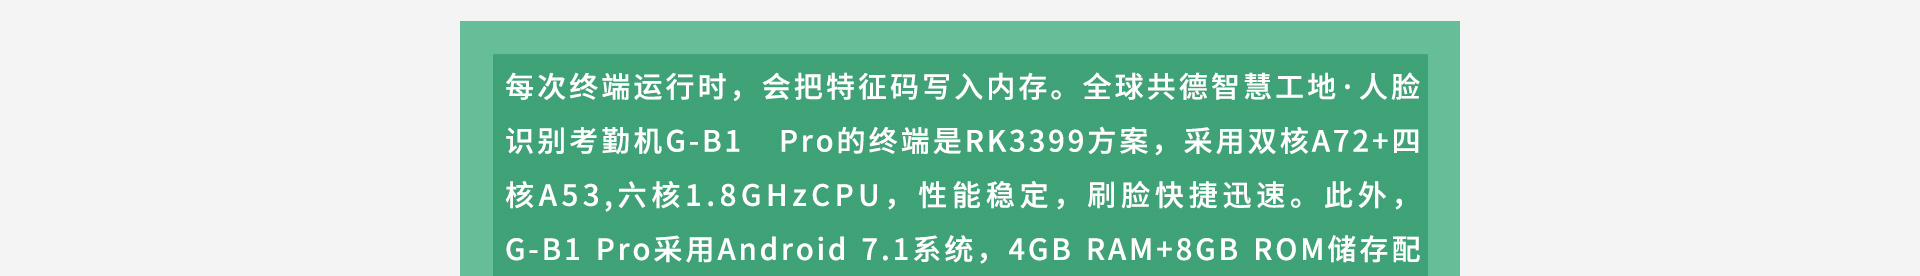 每次终端运行时，会把特征码写入内存。全球共德智慧工地·人脸识别考勤机G-B1 Pro的终端是RK3399方案，采用双核A72+四核A53,六核1.8GHzCPU，性能稳定，刷脸快捷迅速。此外，G-B1 Pro采用Android 7.1系统